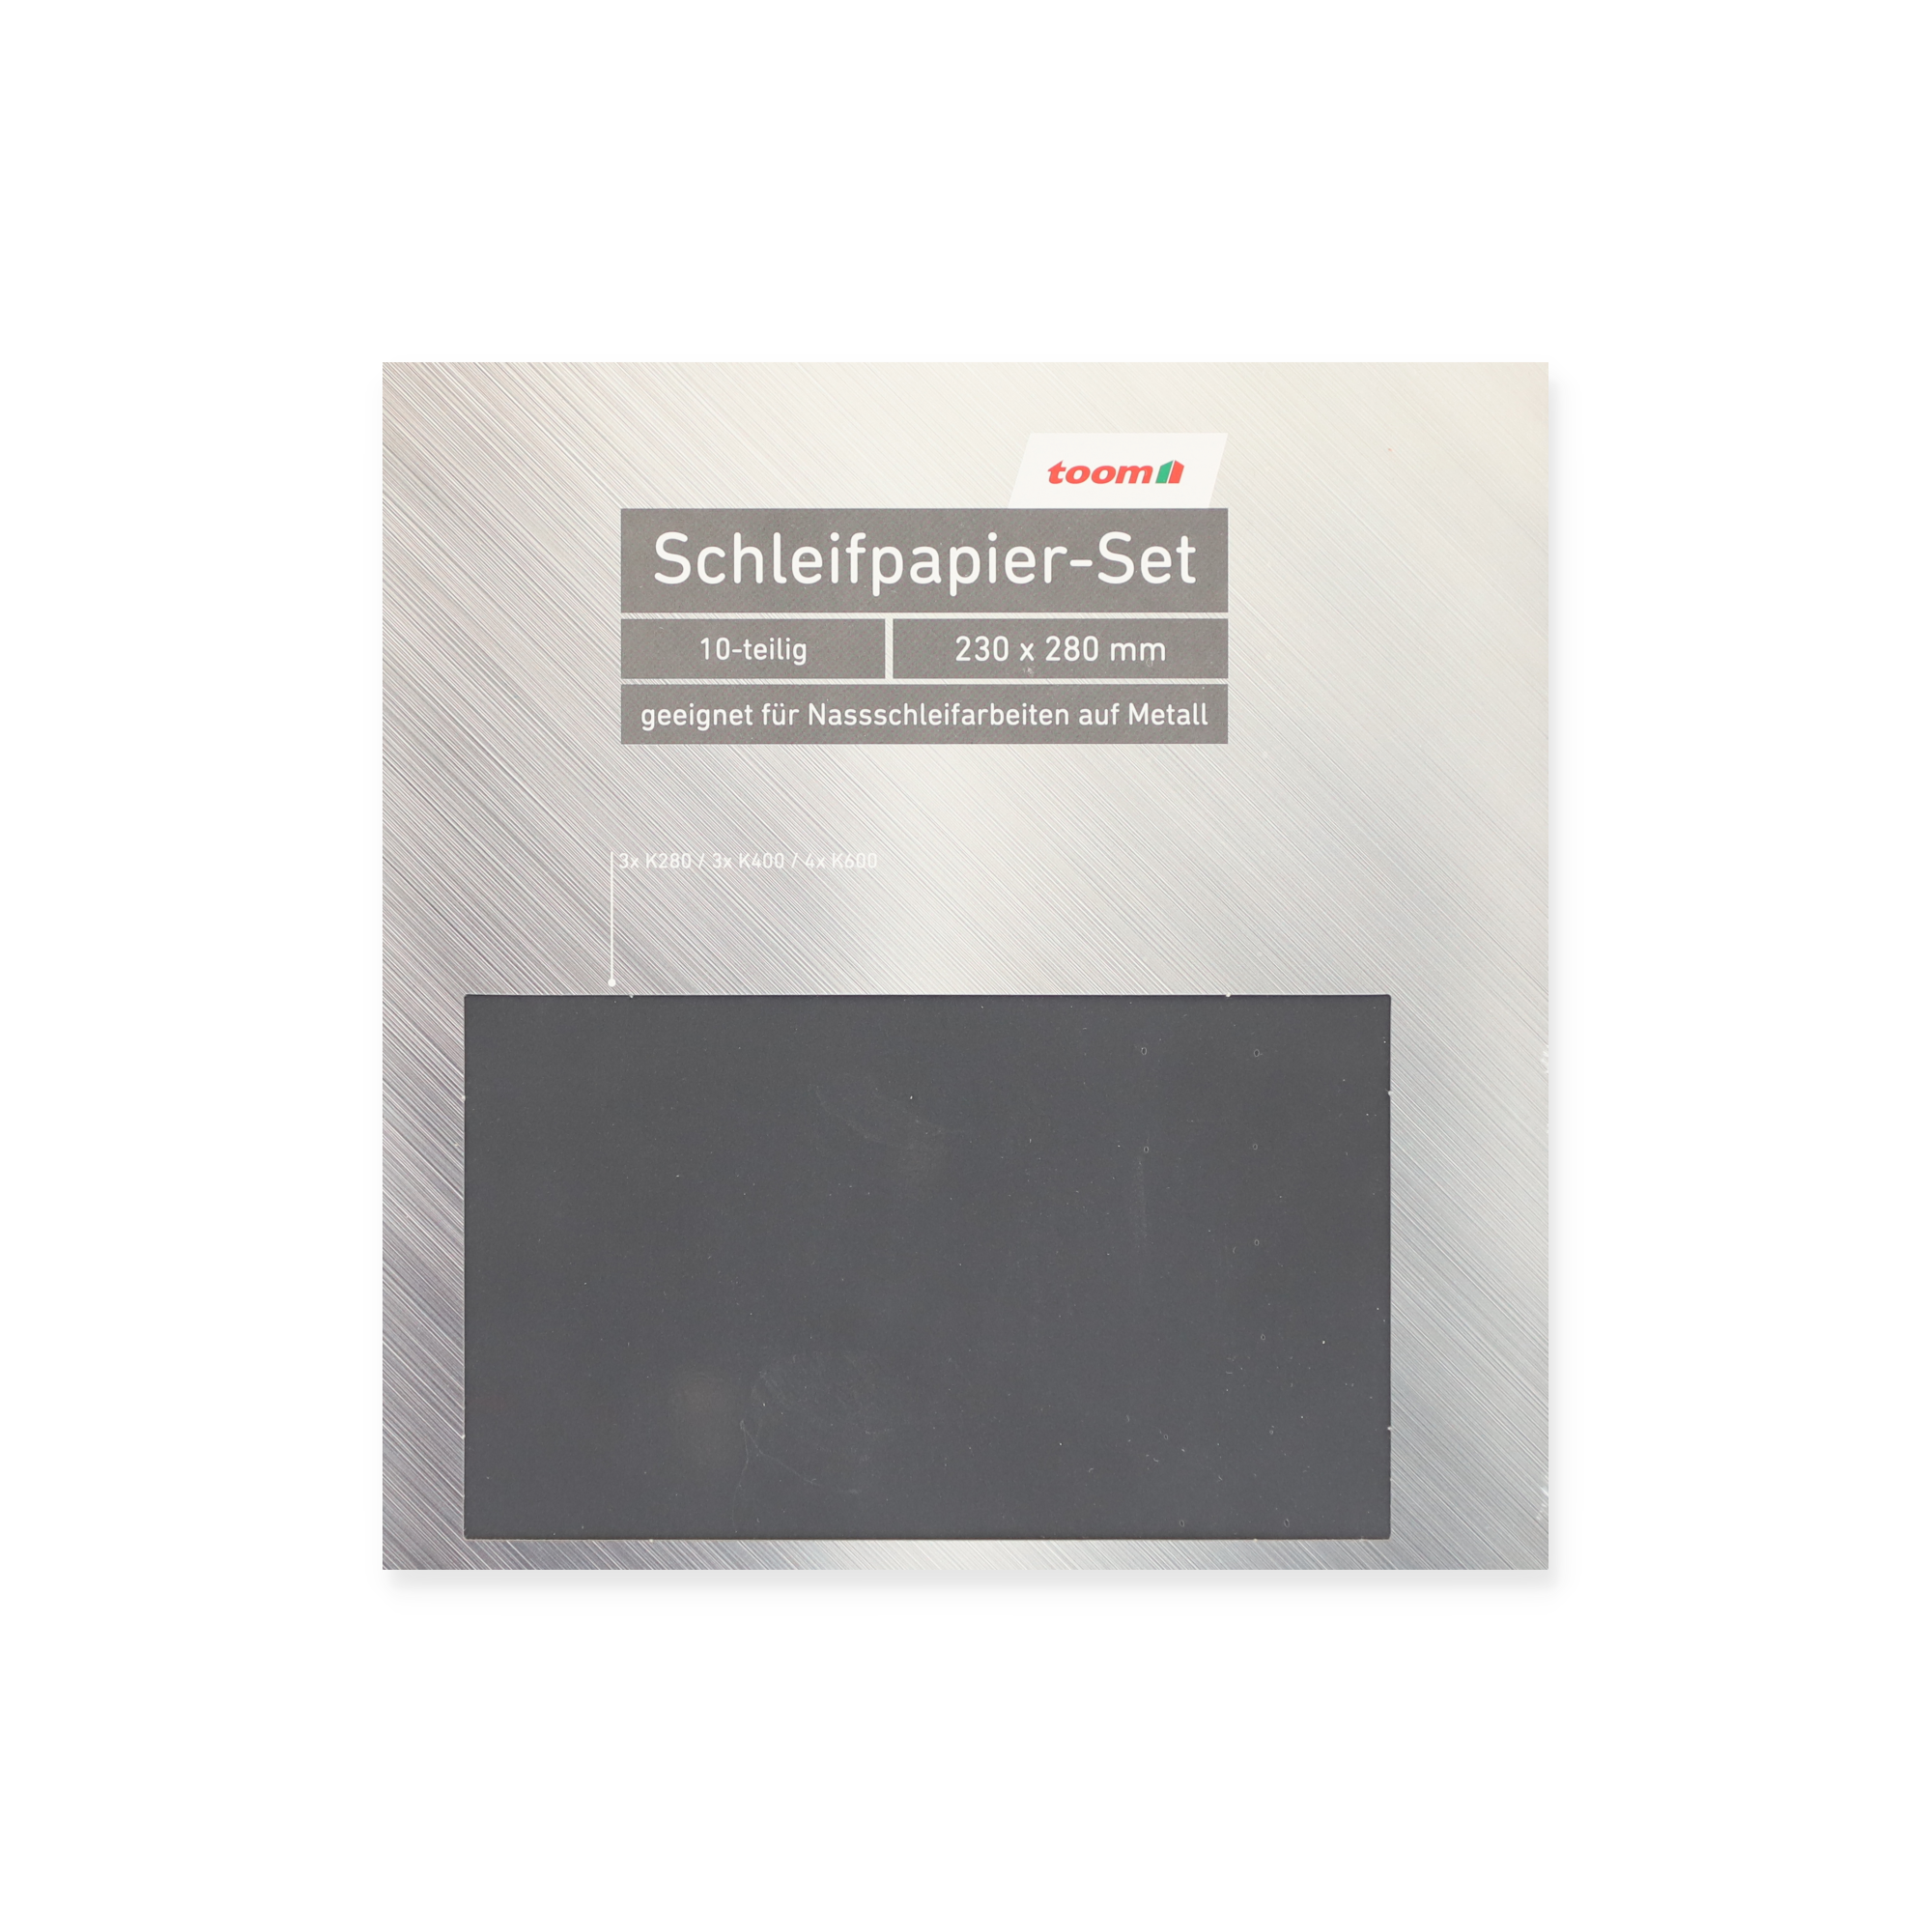 Schleifpapier-Set für Metall 23 x 28 cm 10-teilig + product picture